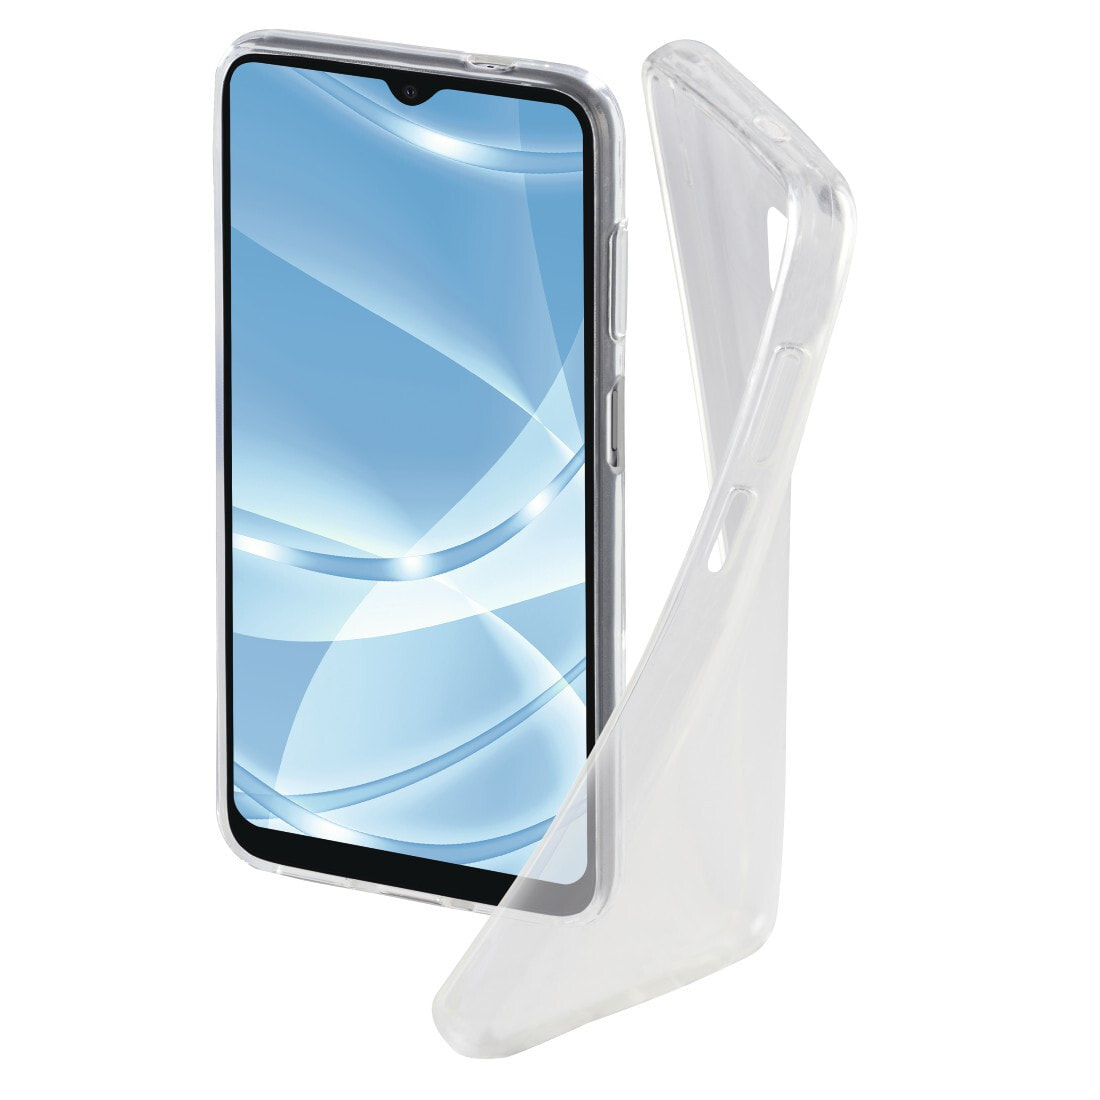 Hama Crystal Clear чехол для мобильного телефона 16,5 cm (6.5